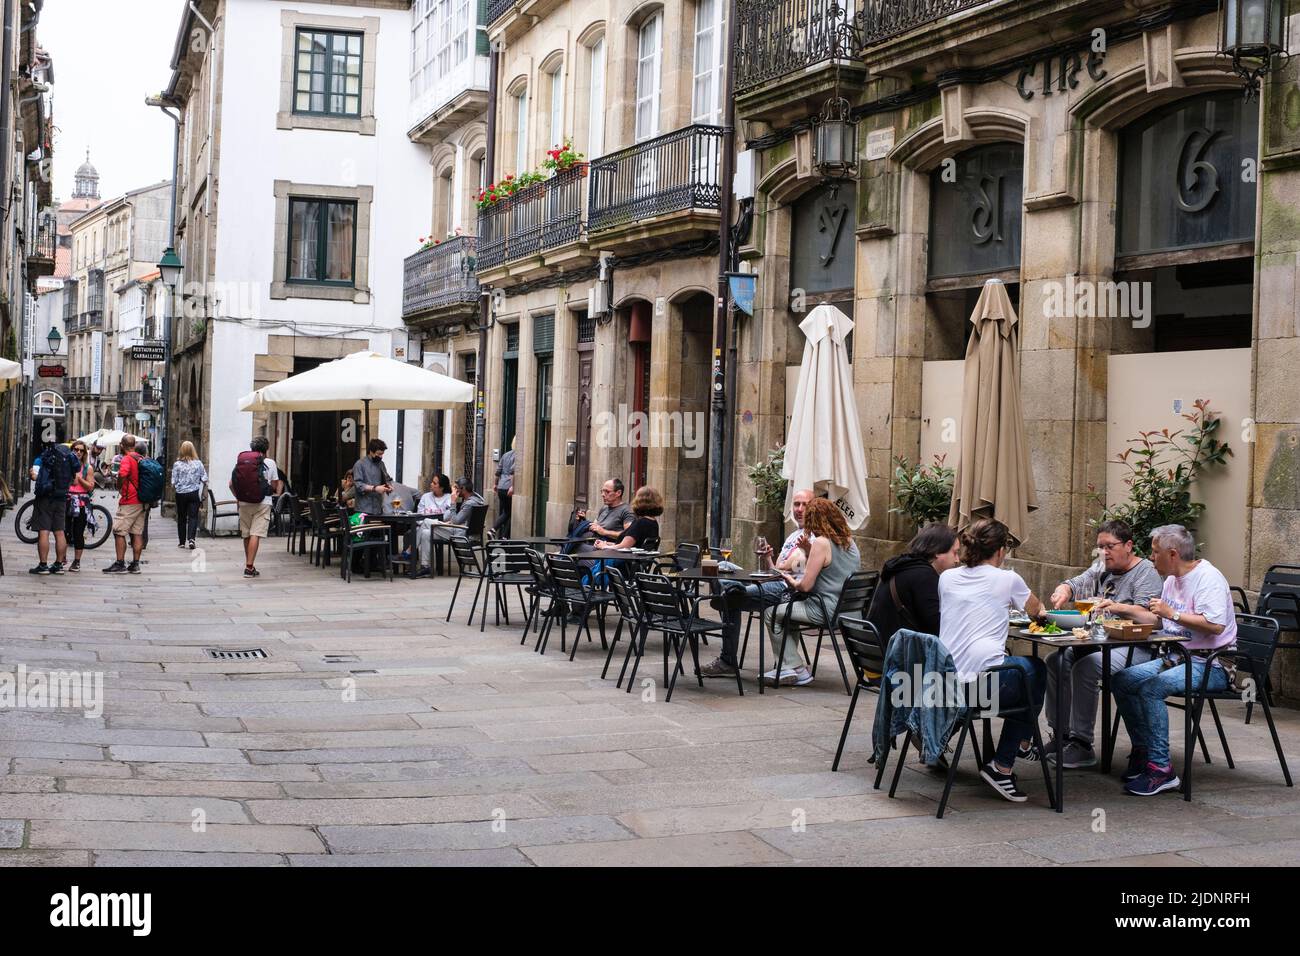 Espagne, Saint-Jacques-de-Compostelle, Galice. Scène de rue, café-terrasse. Banque D'Images